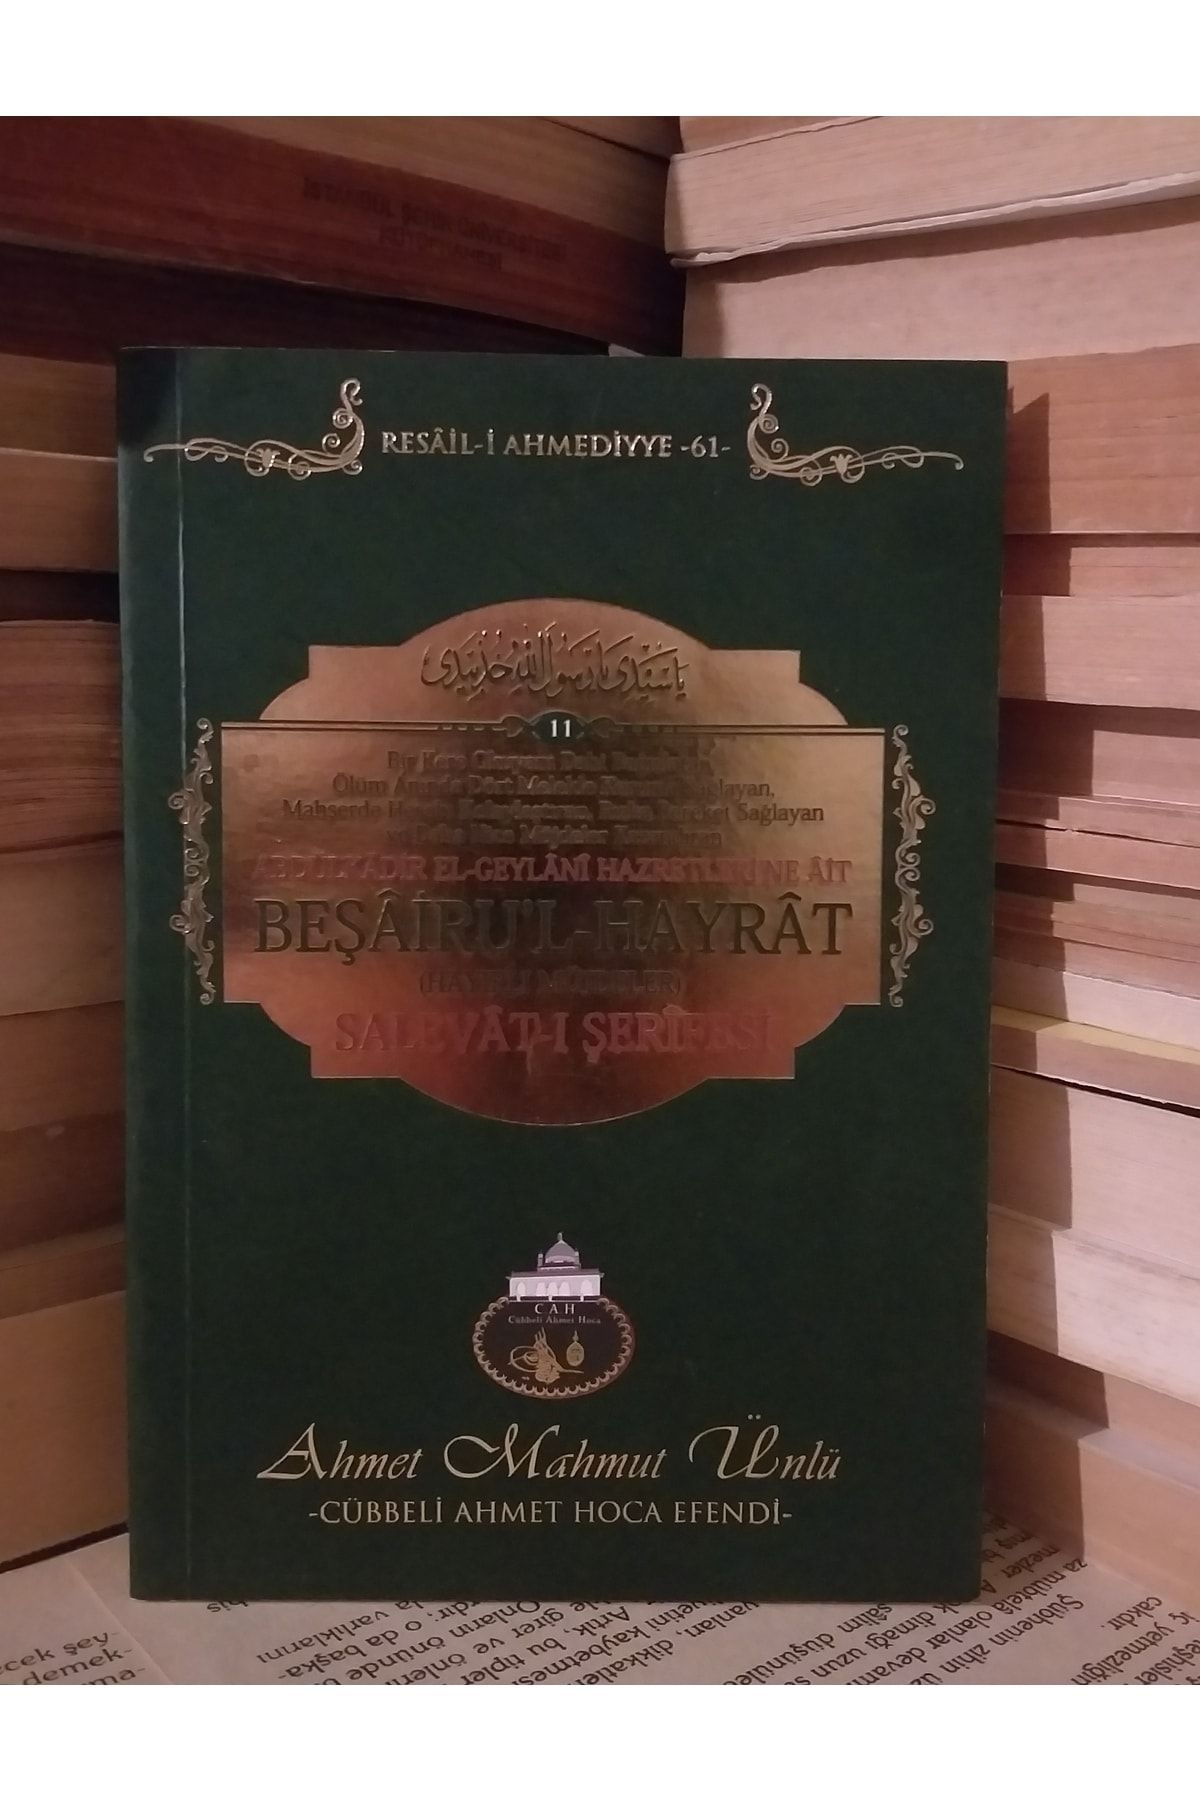 Cübbeli Ahmet Hoca Yayıncılık Beşairu'l-hayrat Salevat-ı Şerifesi / Resail-i Ahmediyye-61